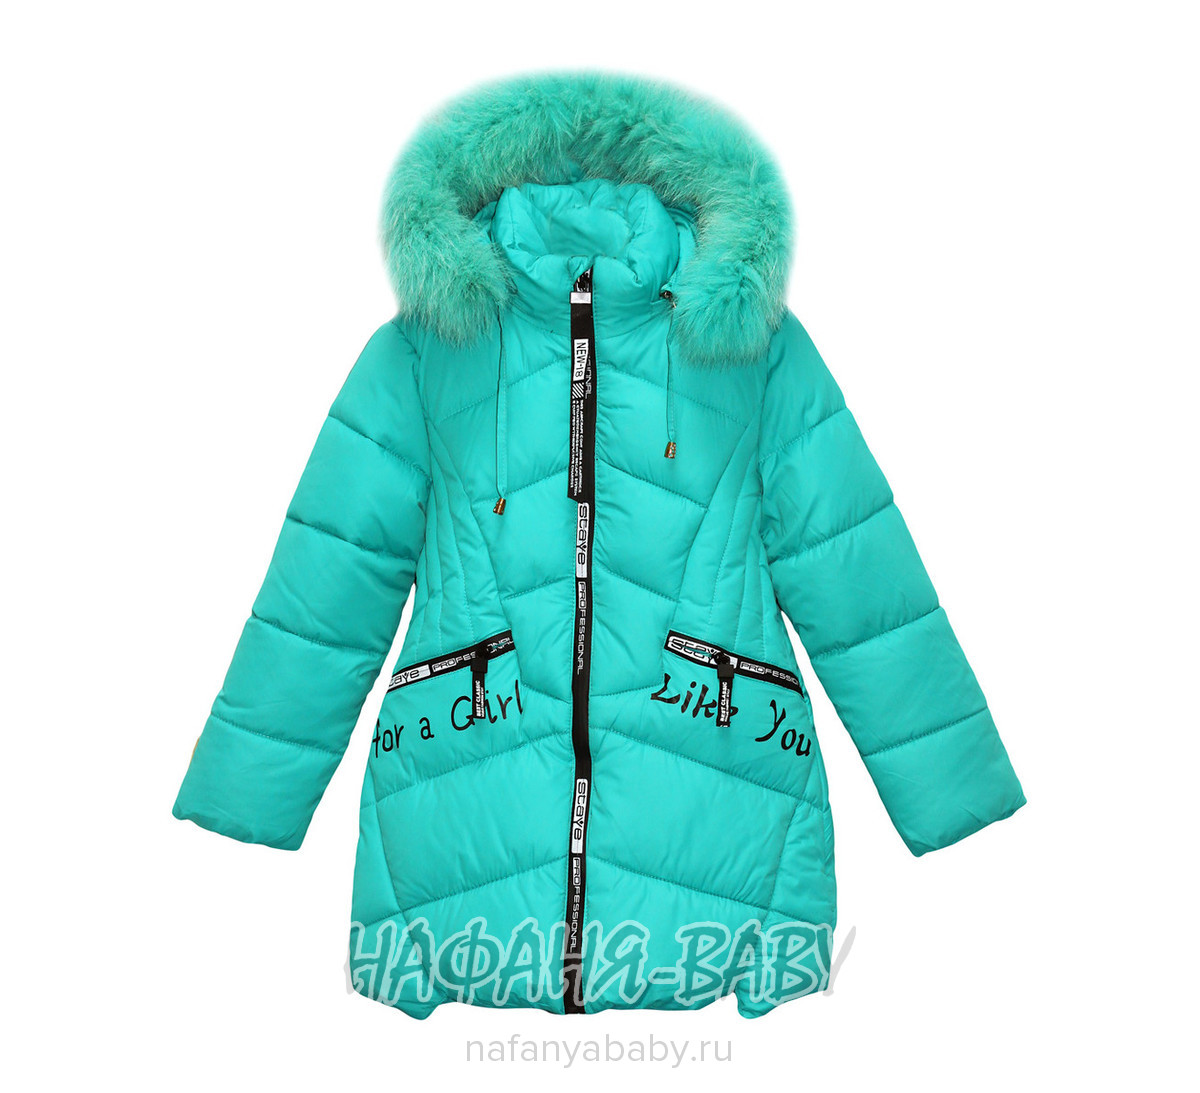 Детская зимняя куртка L-Z, купить в интернет магазине Нафаня. арт: 2715.